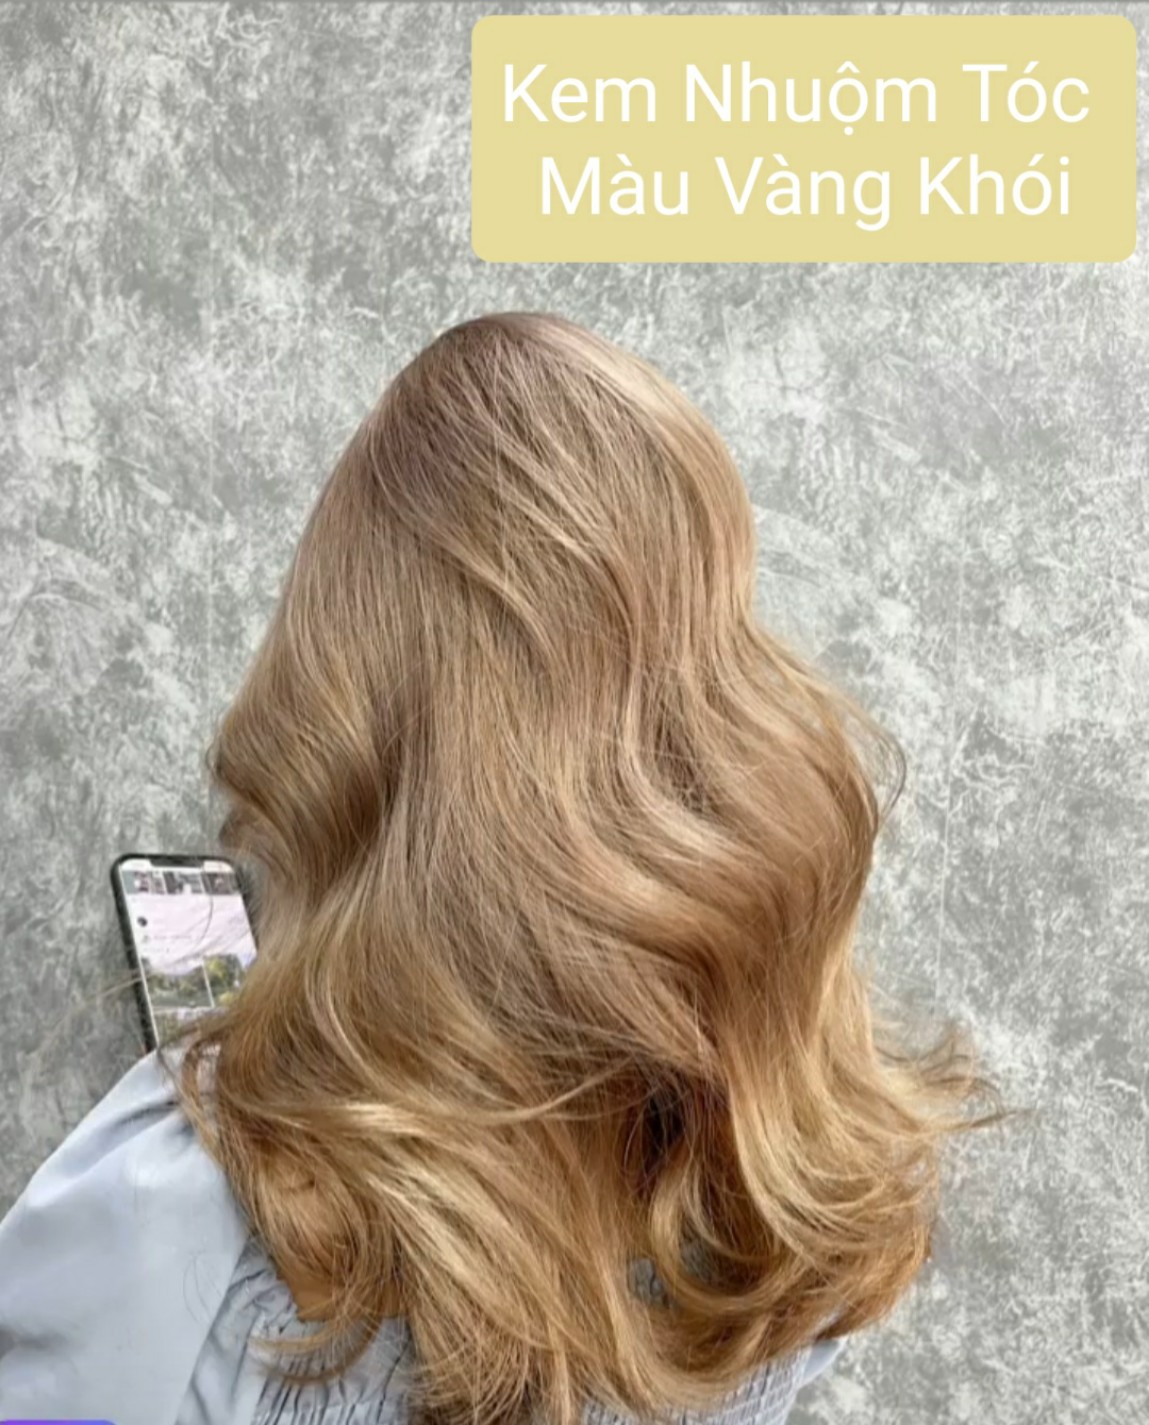 20+ màu tóc vàng tây thời thượng dành cho cô nàng sành điệu | IVY moda